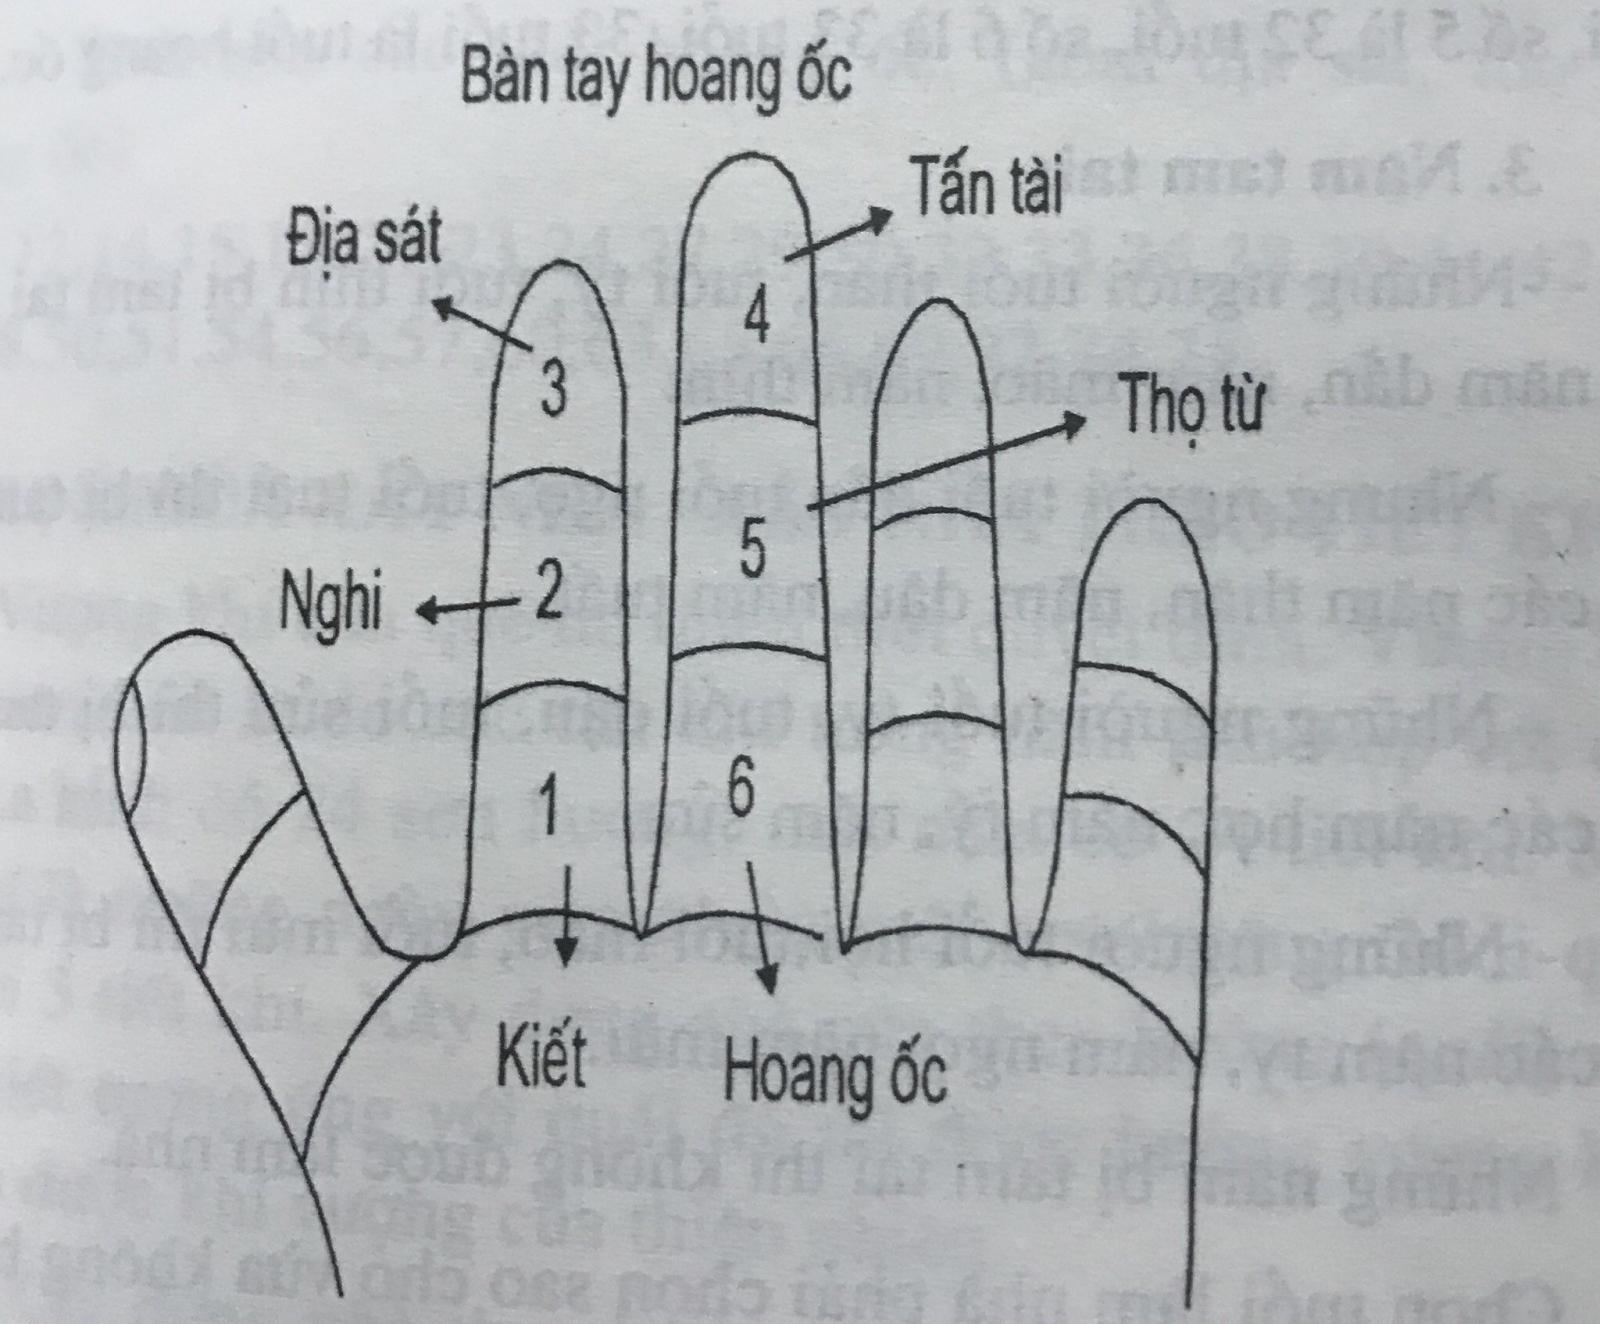 Cách tính Hoang ốc dựa theo quy luật các cung trên bàn tay Hoang ốc.